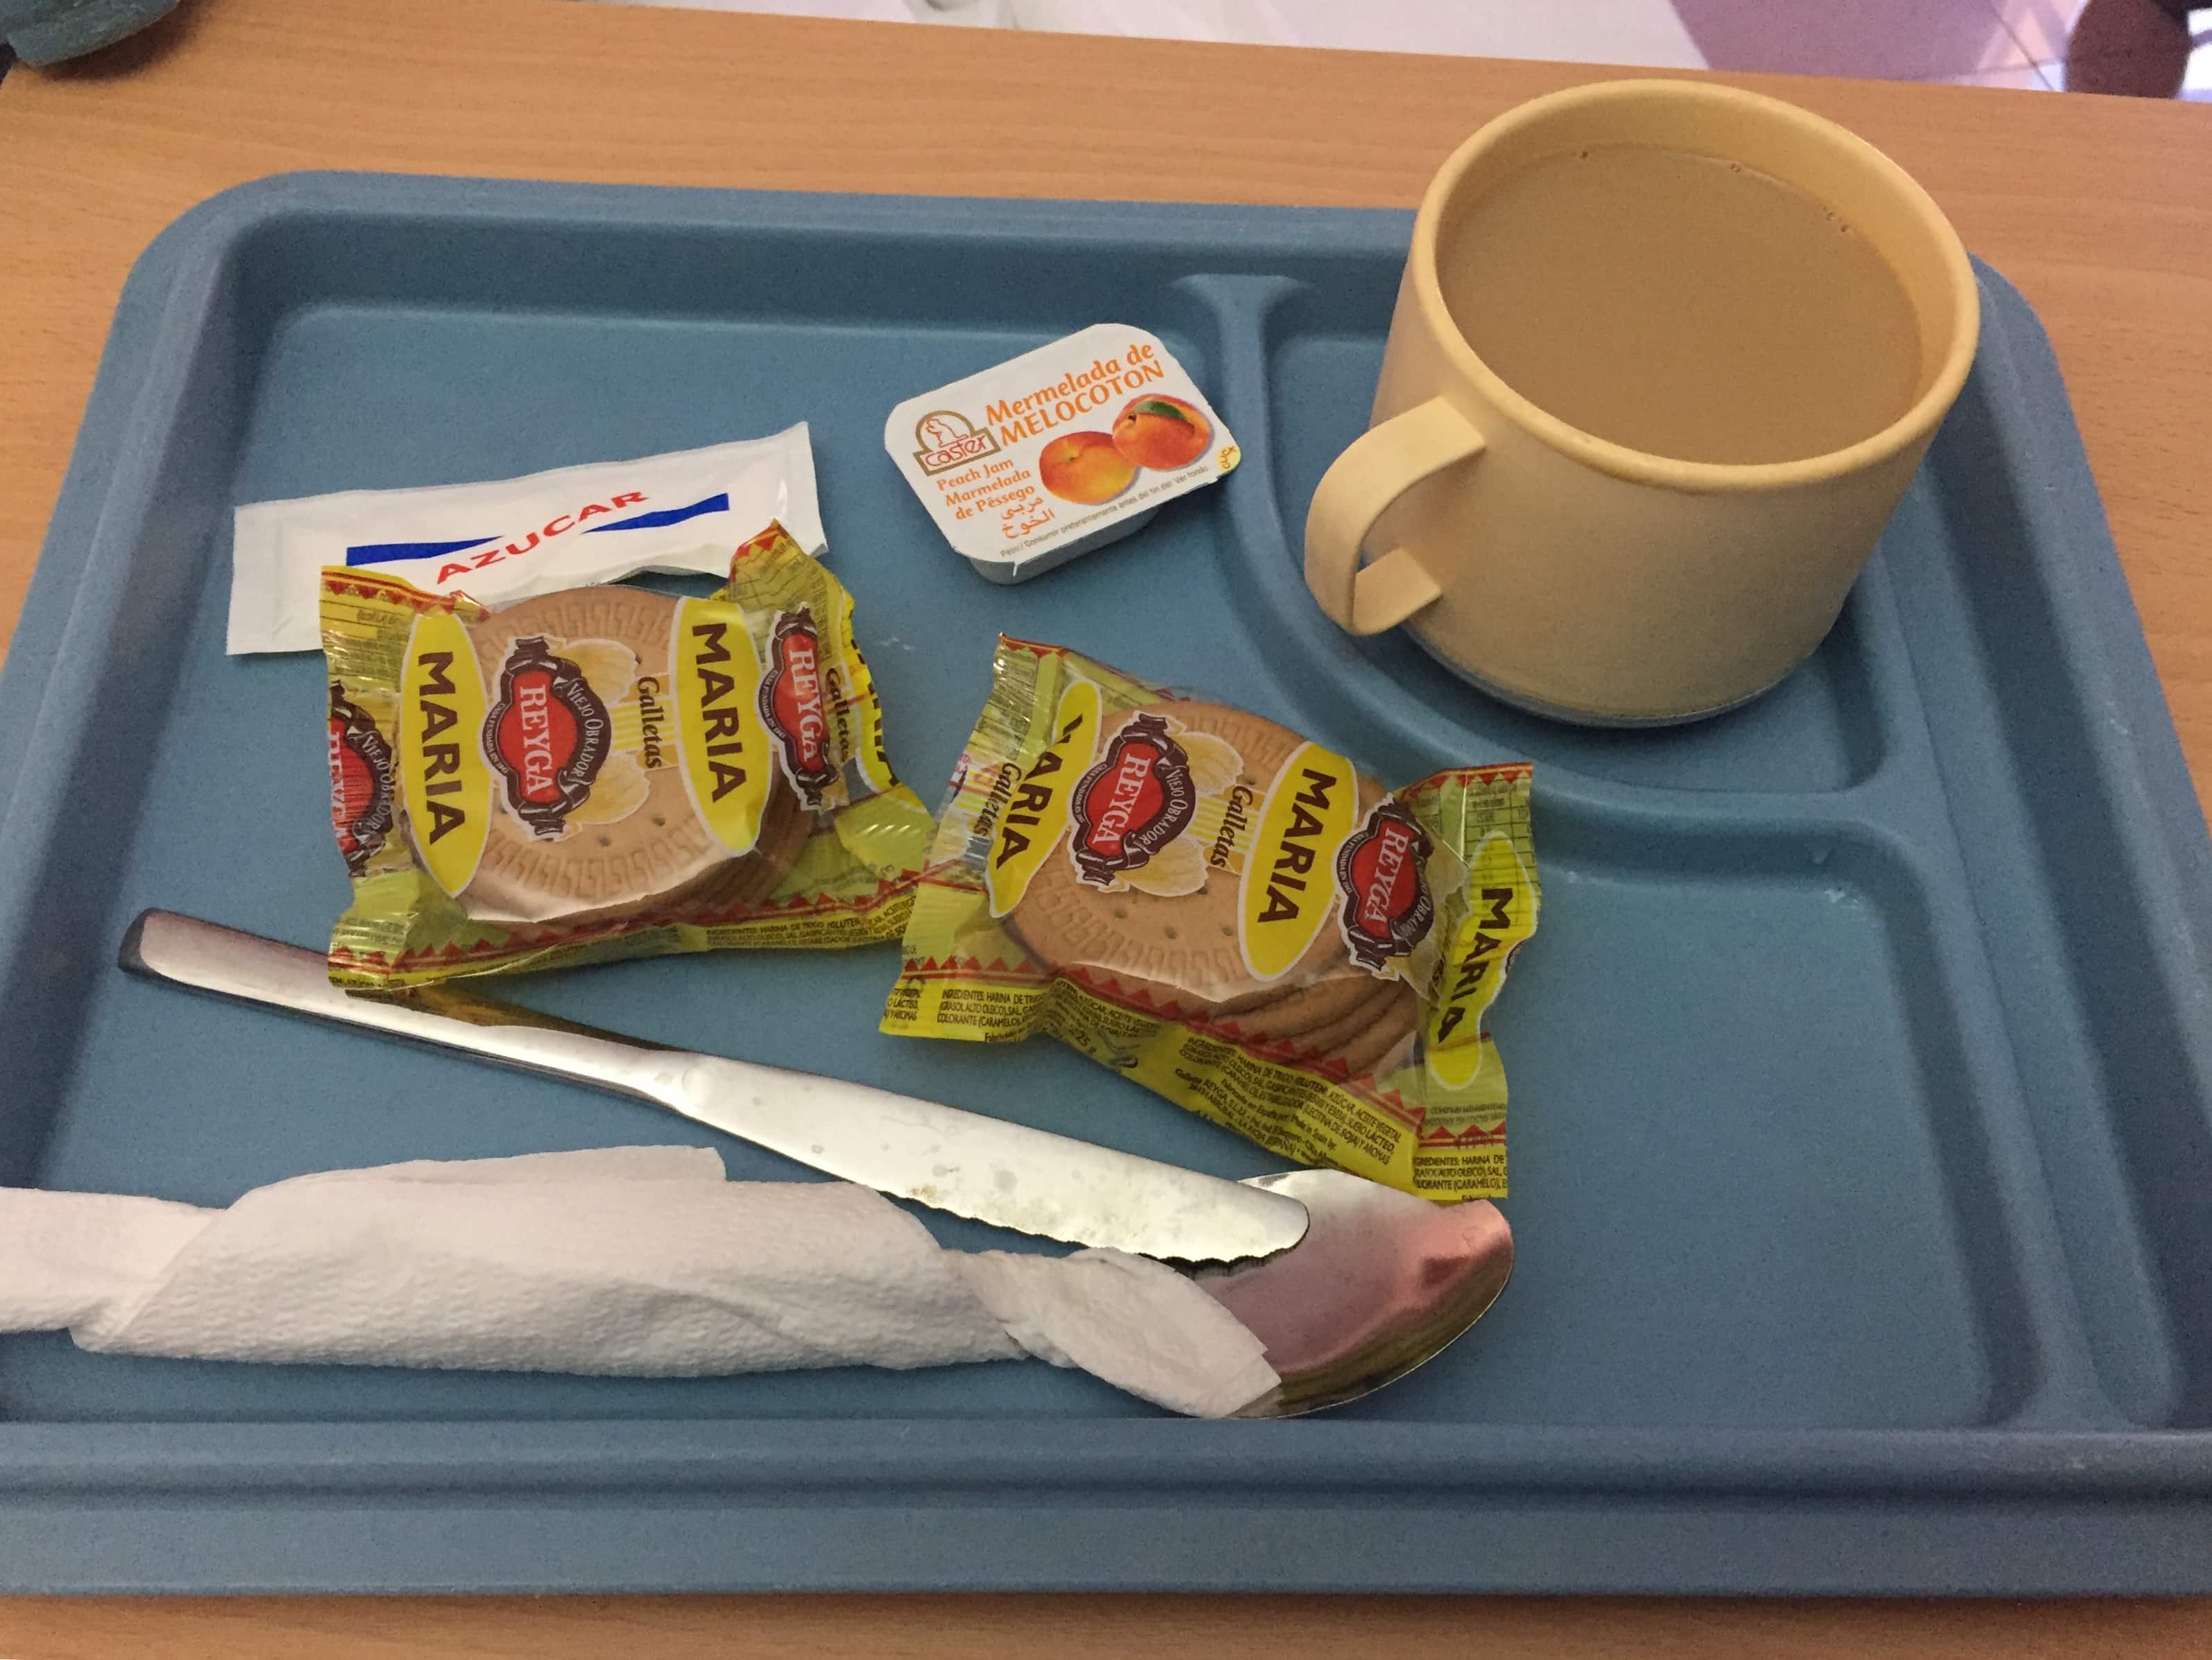 Breakfast in the hospital in Spain